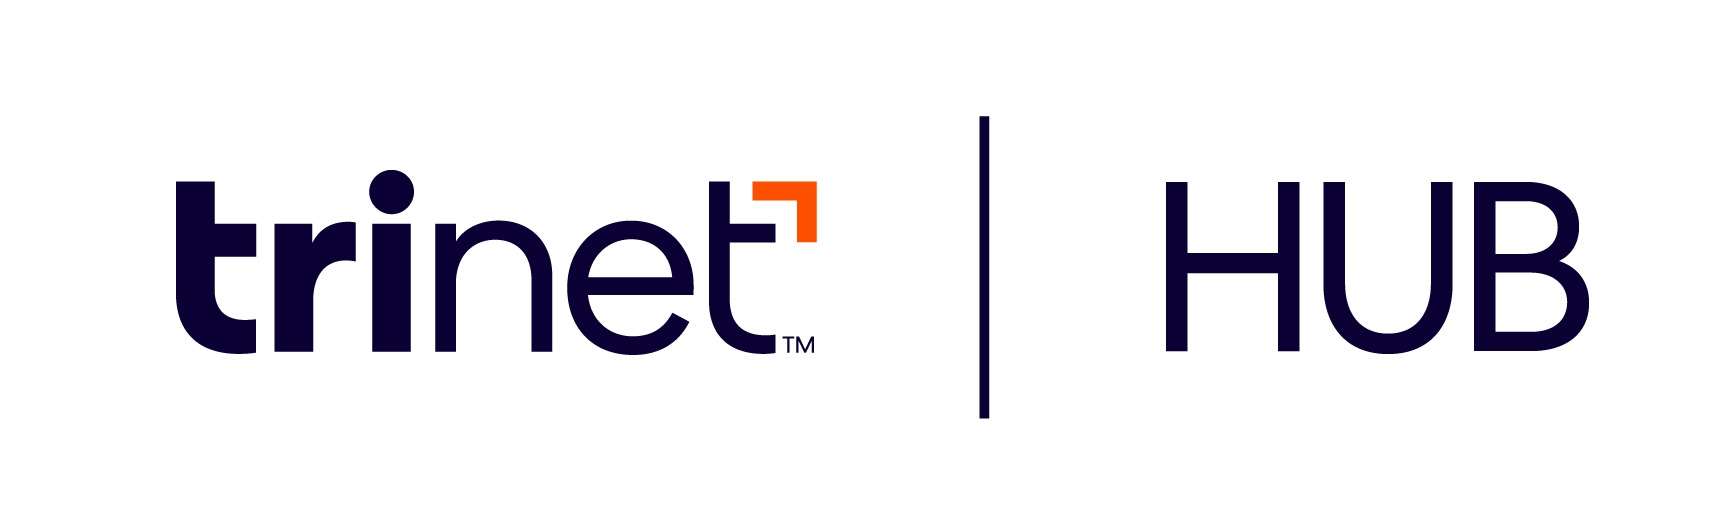 trinet-hub-logo.png